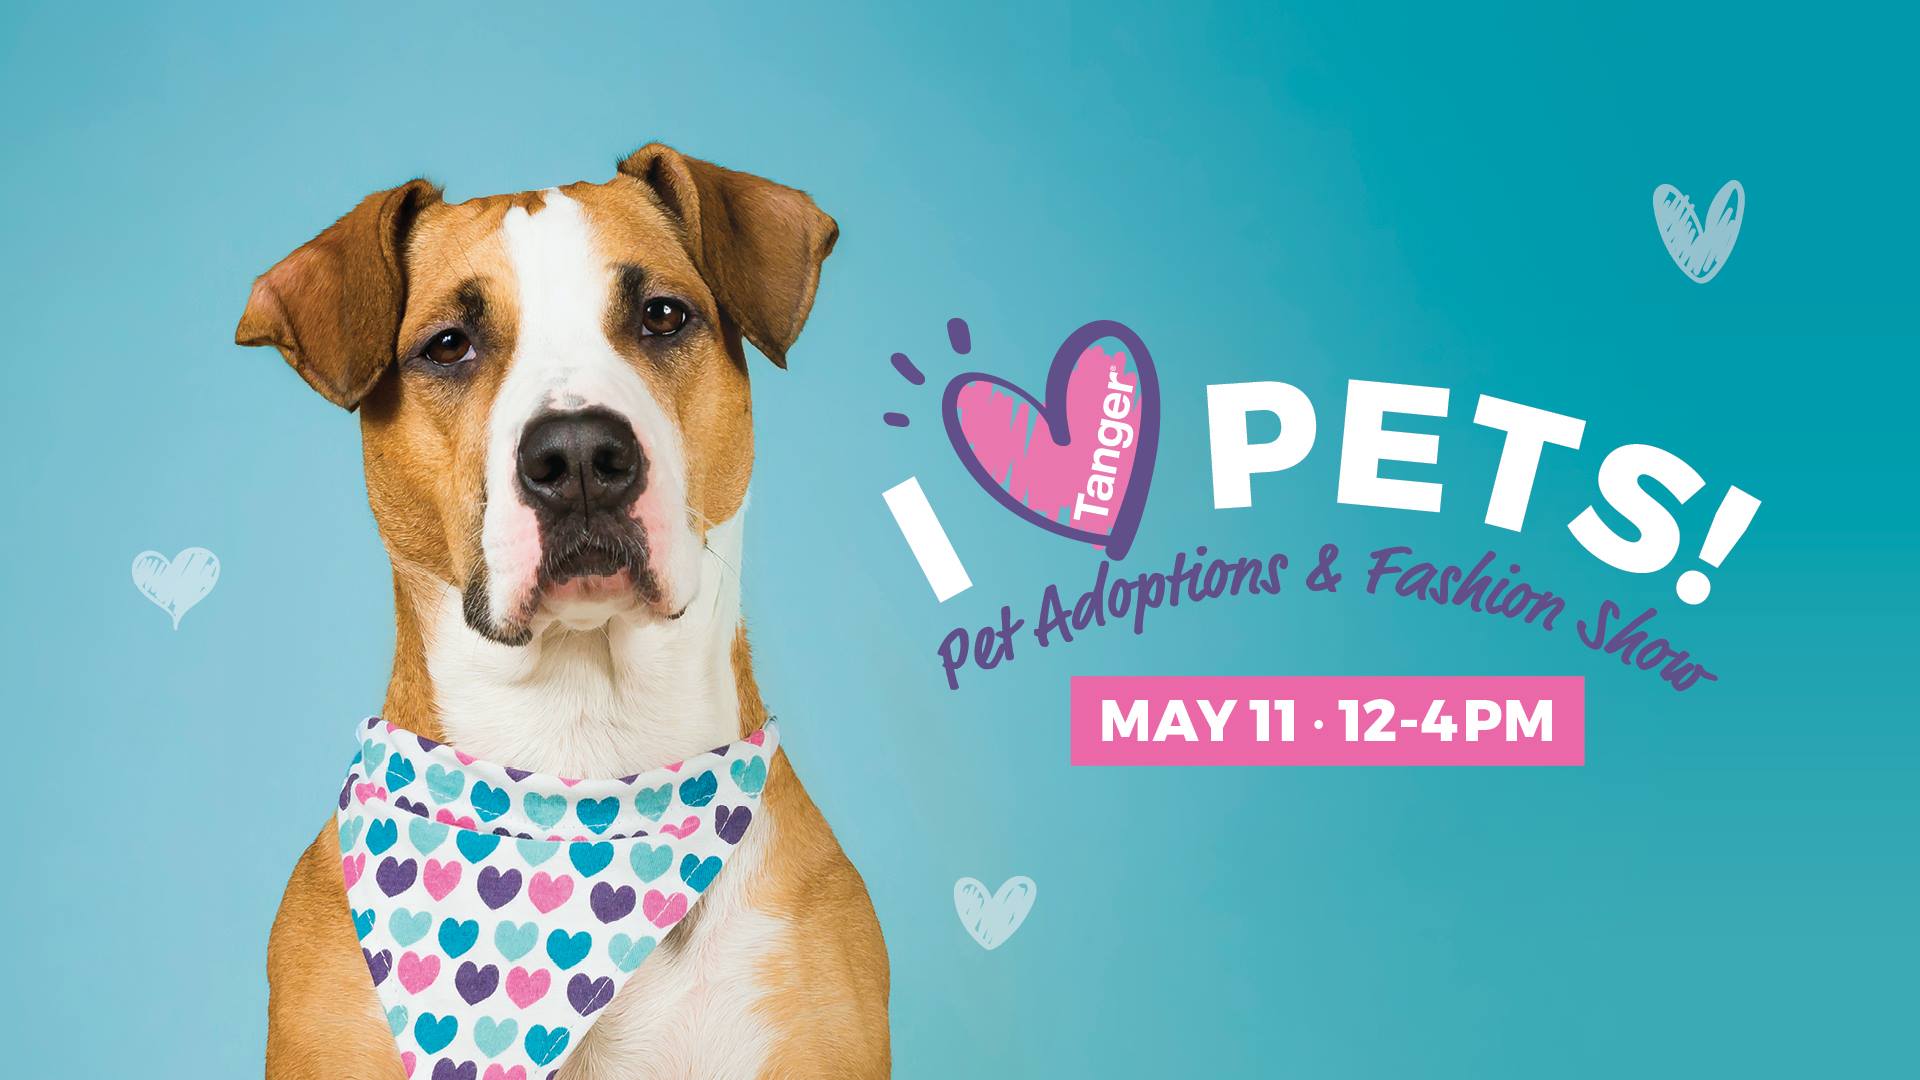 I Heart Pets! Pet Adoption and Doggy Fashion Show